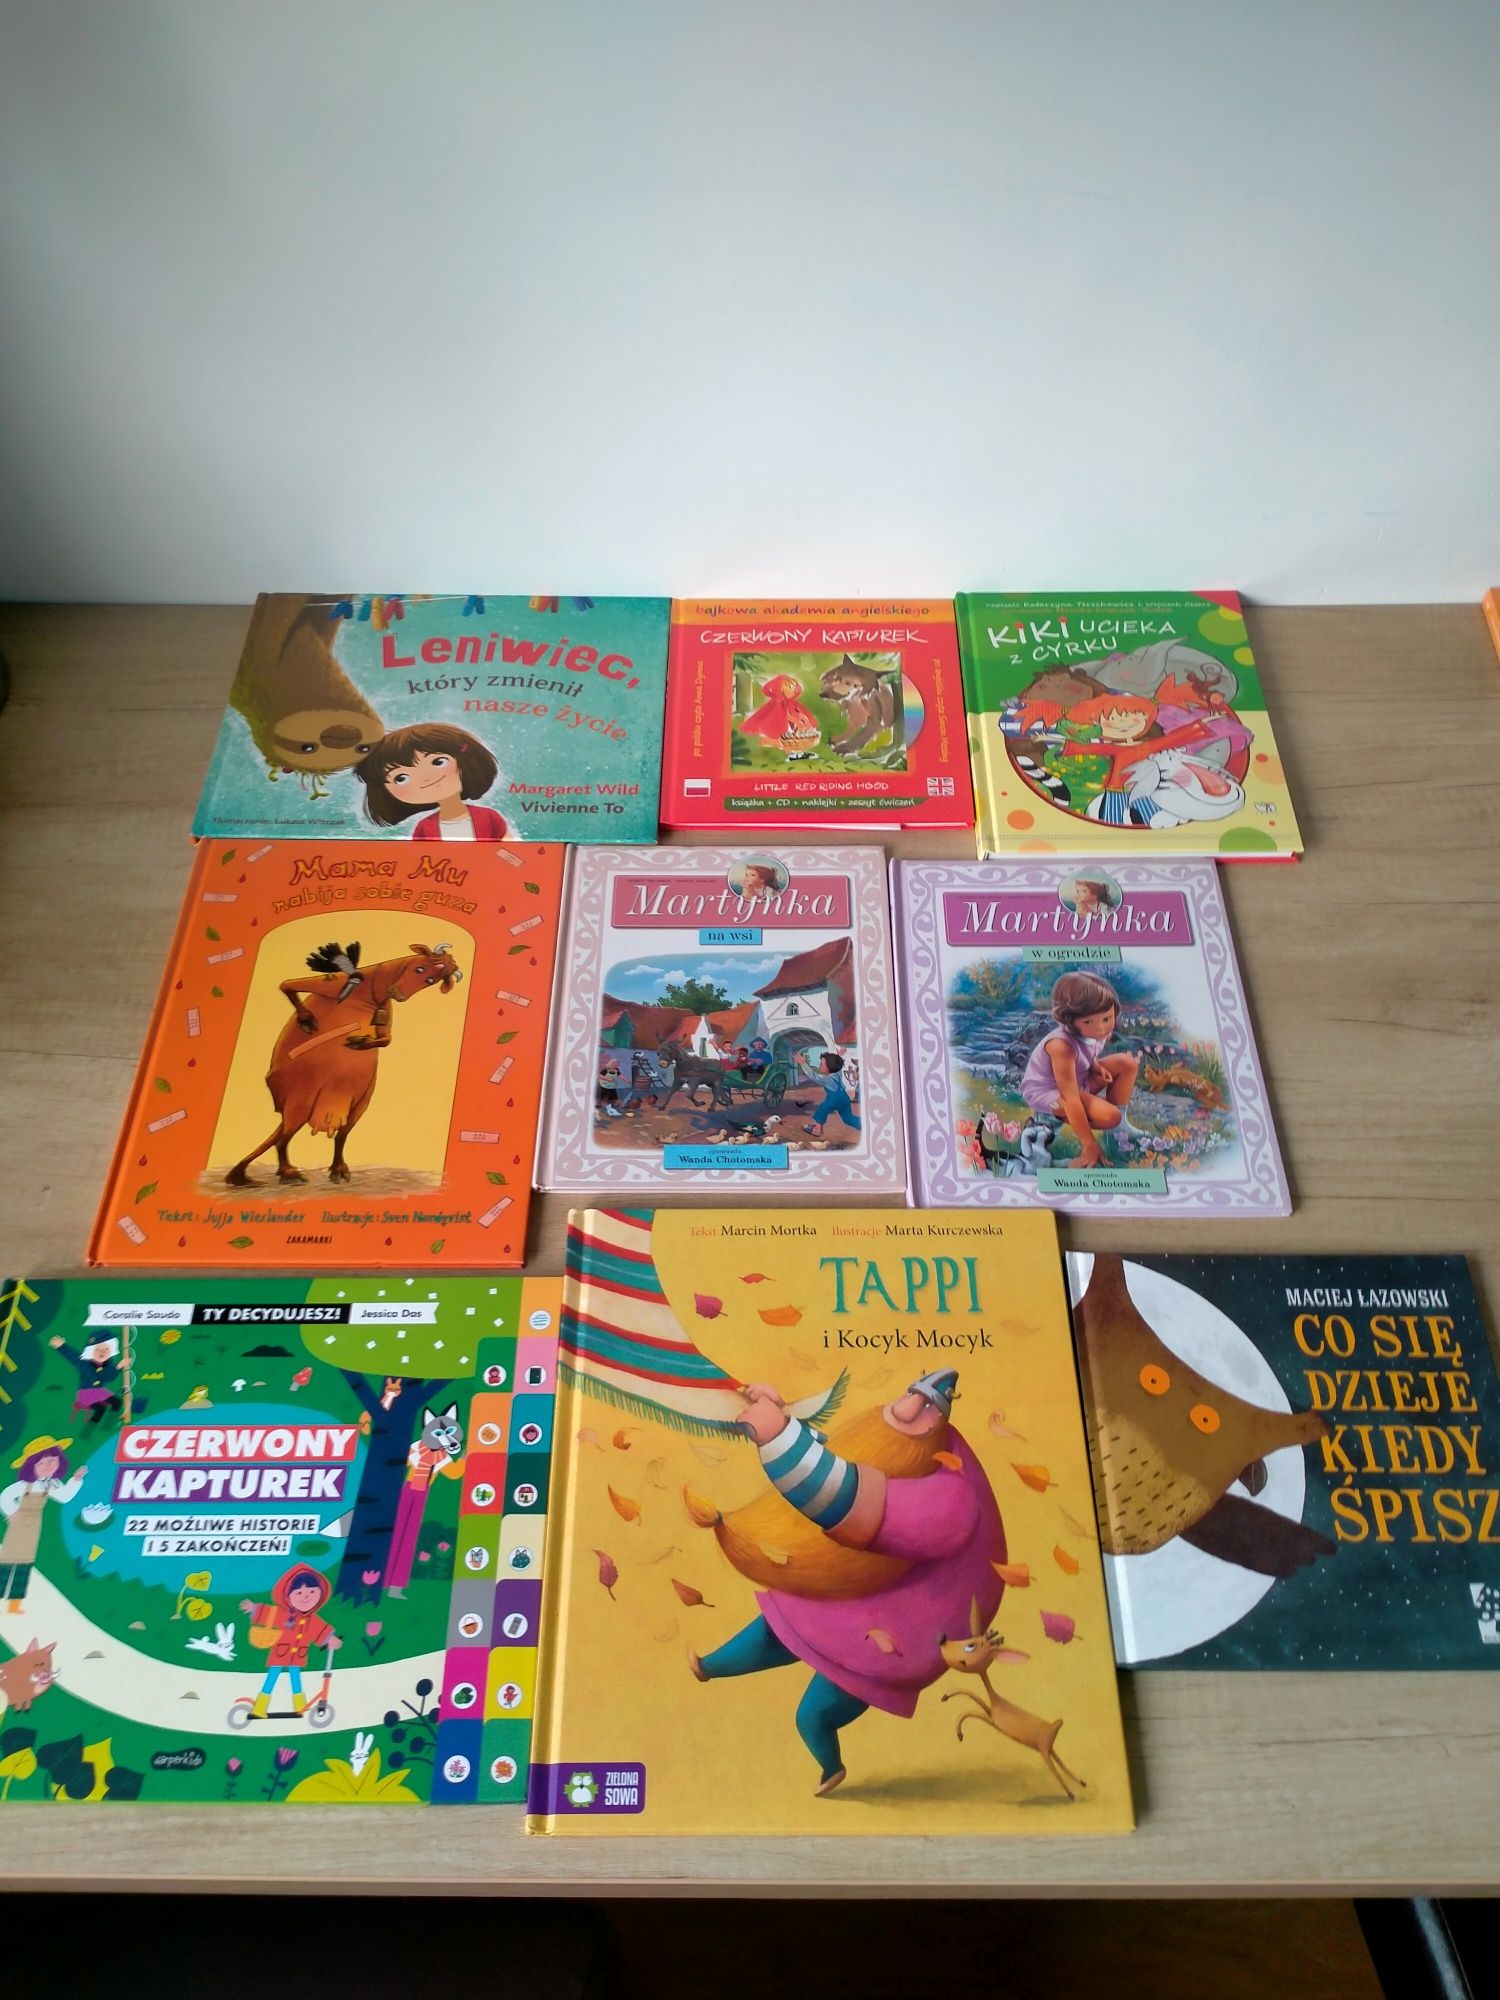 Książki dla dzieci zestaw. Bing, Tappi, Roszpunka, Martynka.